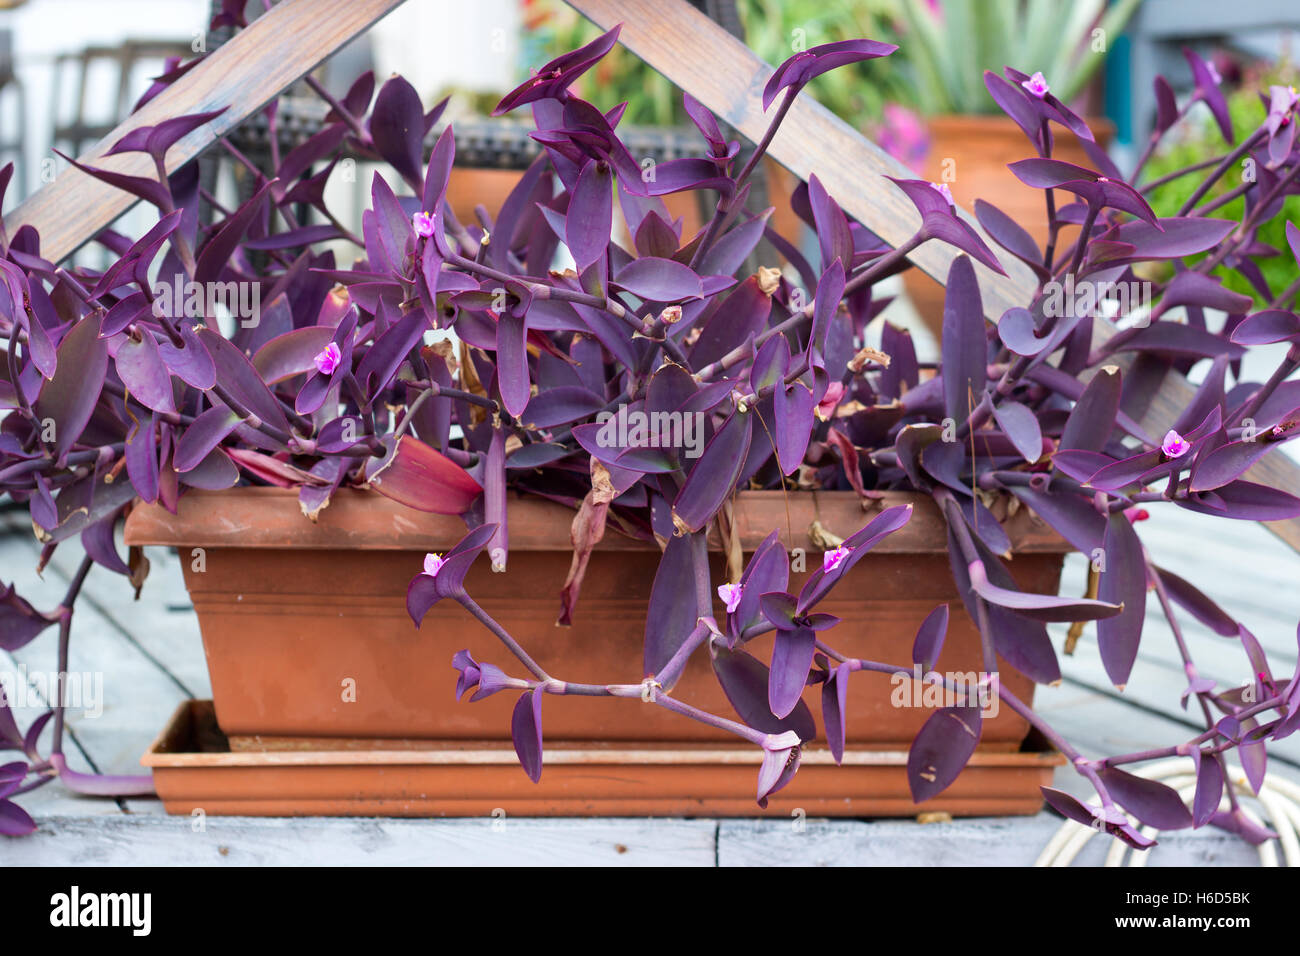 Purple heart plant in flowerpot Stock Photo